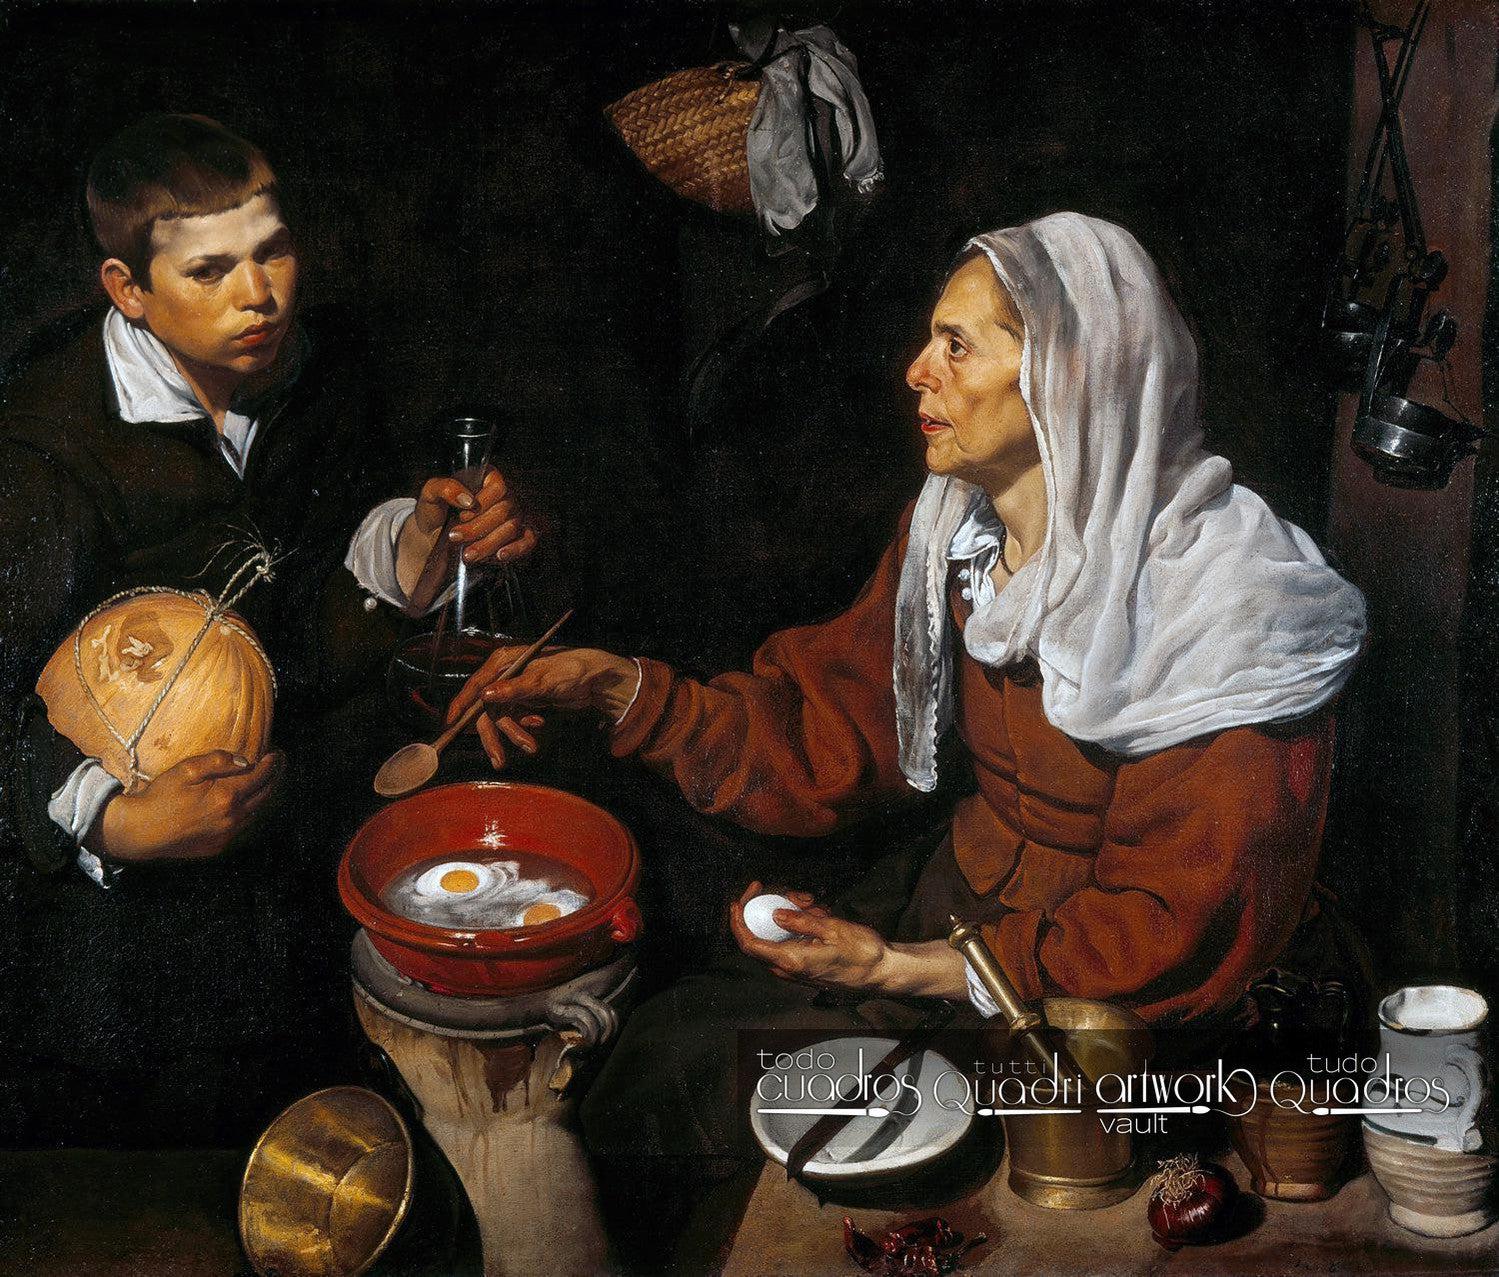 Vecchia che frigge le uova, Velázquez